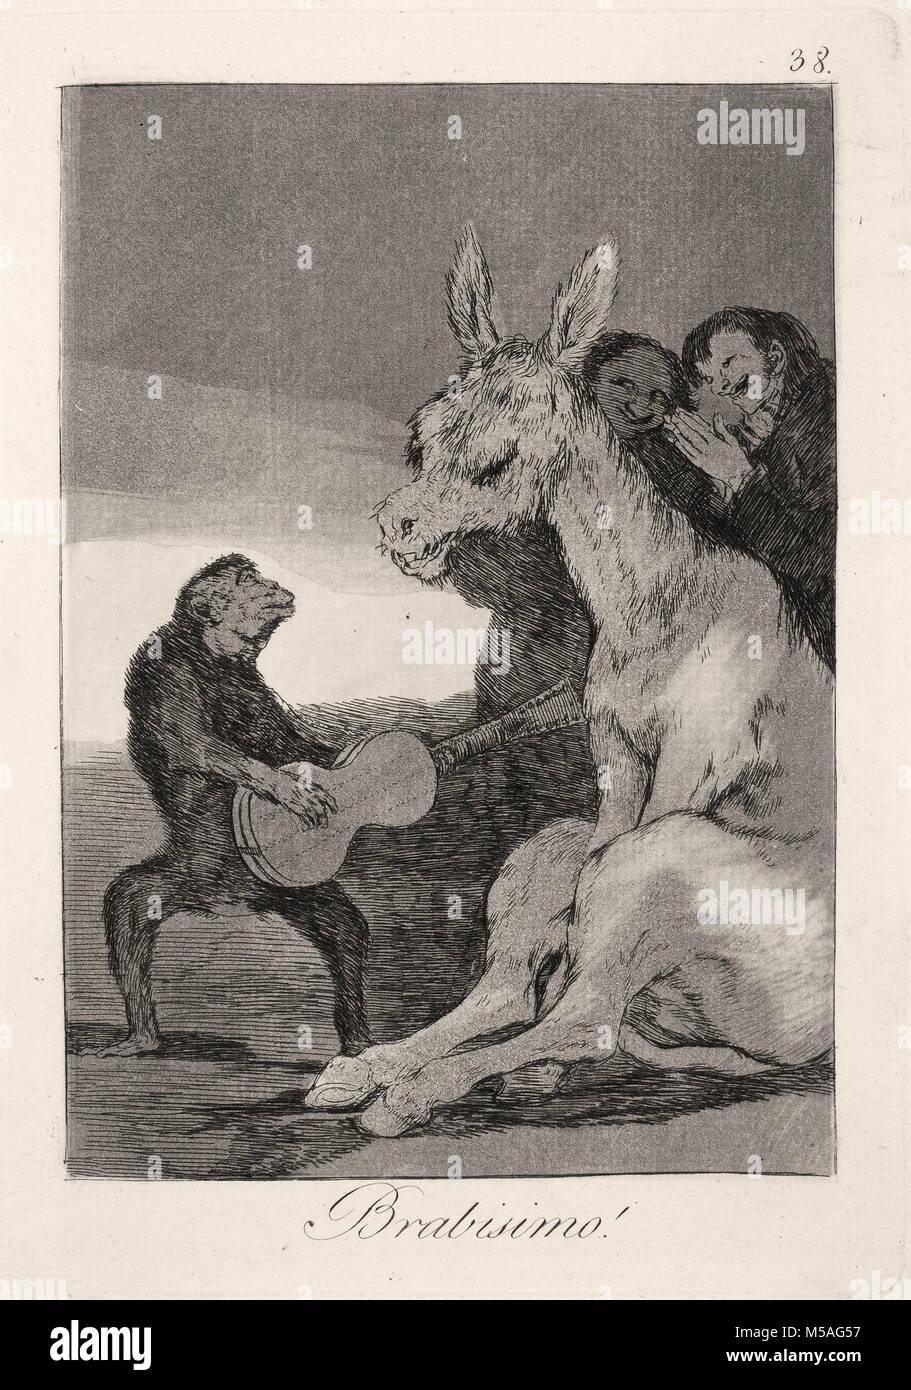 Francisco de Goya - Los Caprichos - No. 38 - Brabisimo! Stock Photo